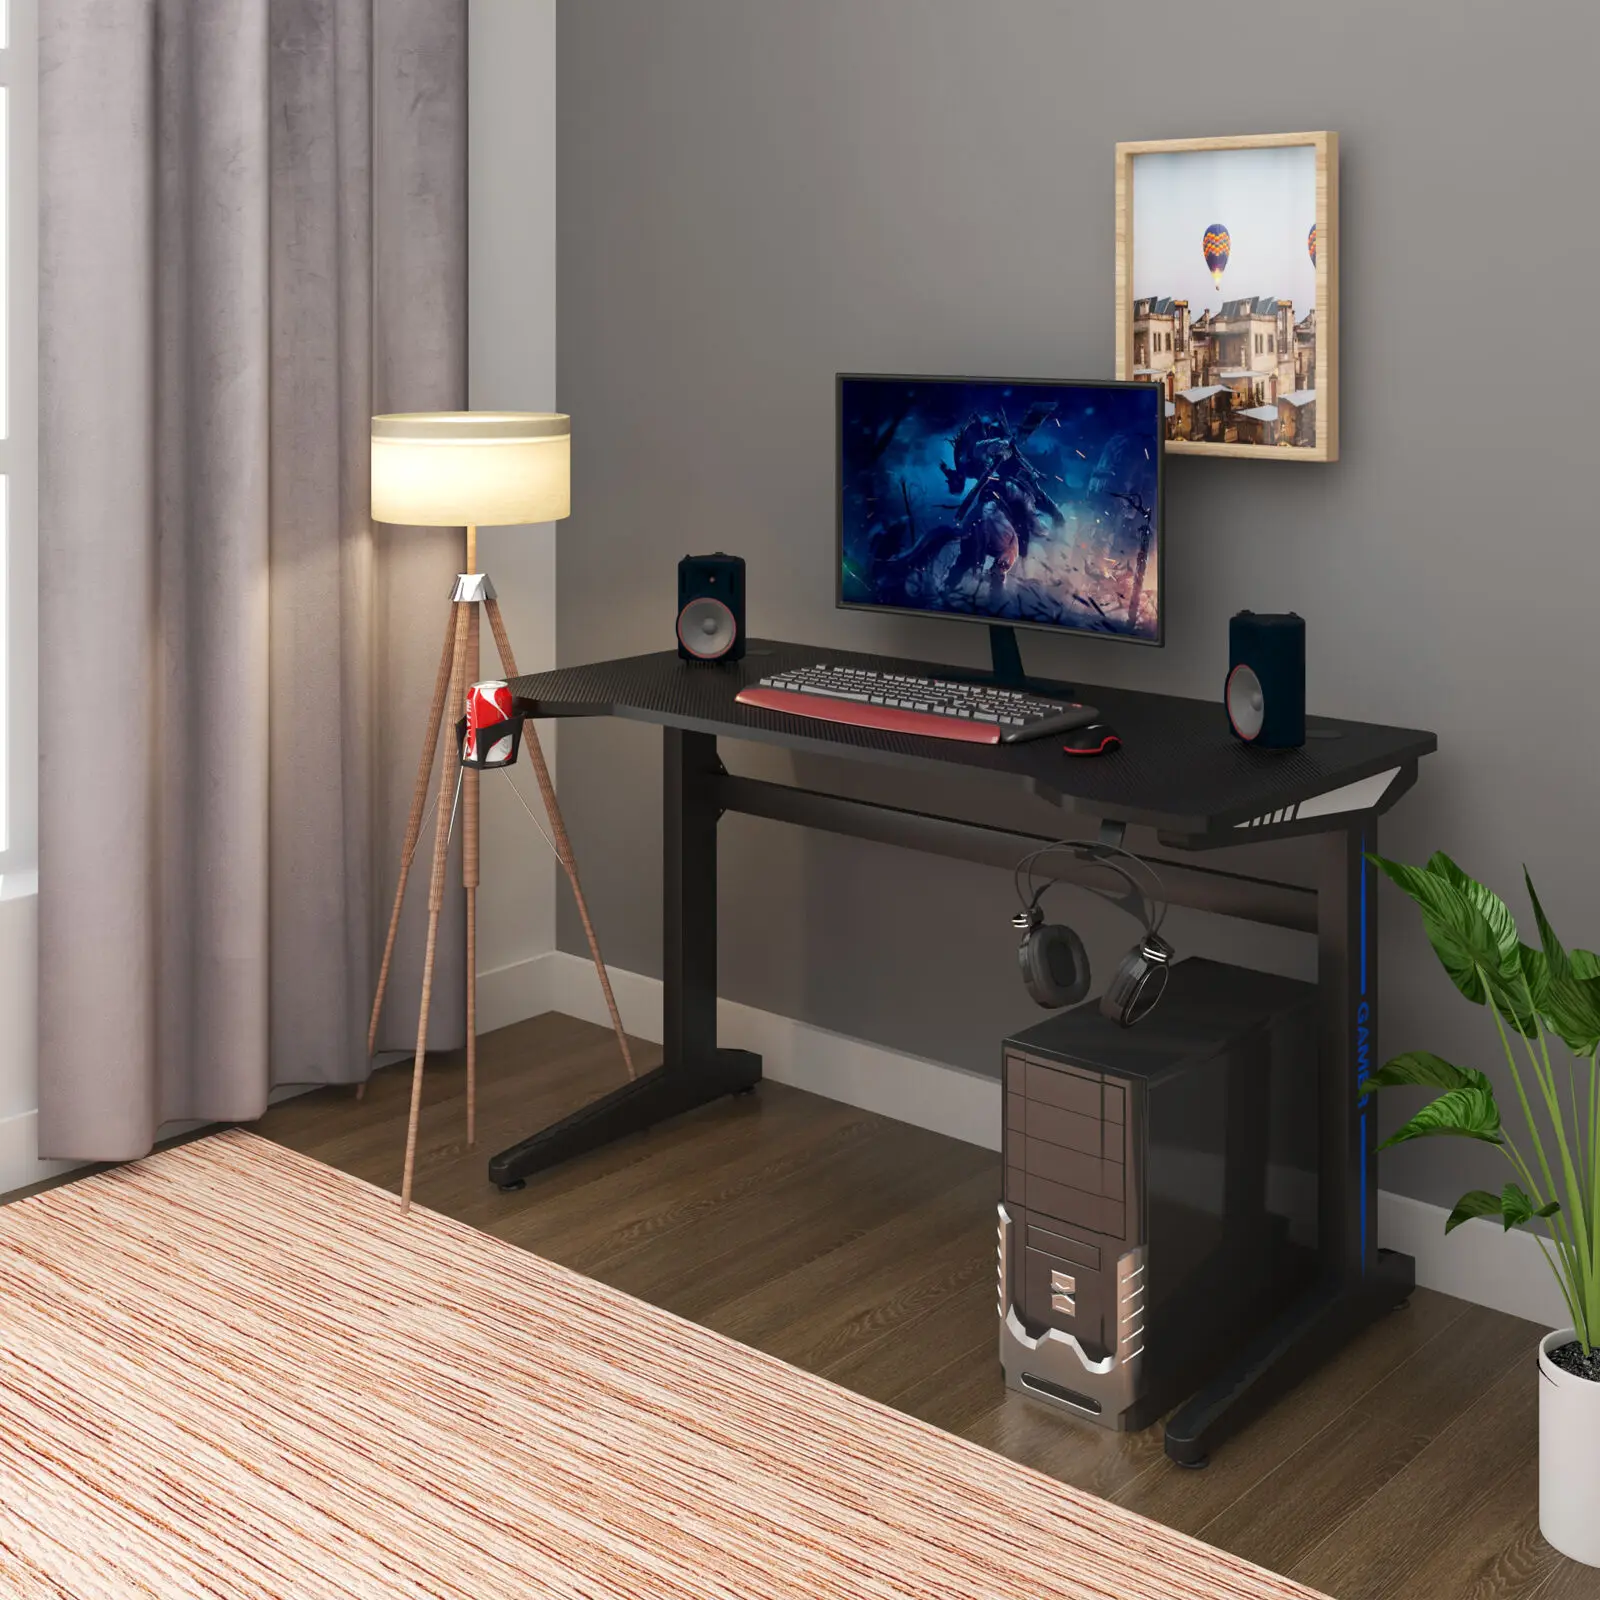 

Игровой стол, офисный стол для обучения, игровой компьютерный стол в форме Z, игровой стол для ПК, игровая клавиатура с монитором